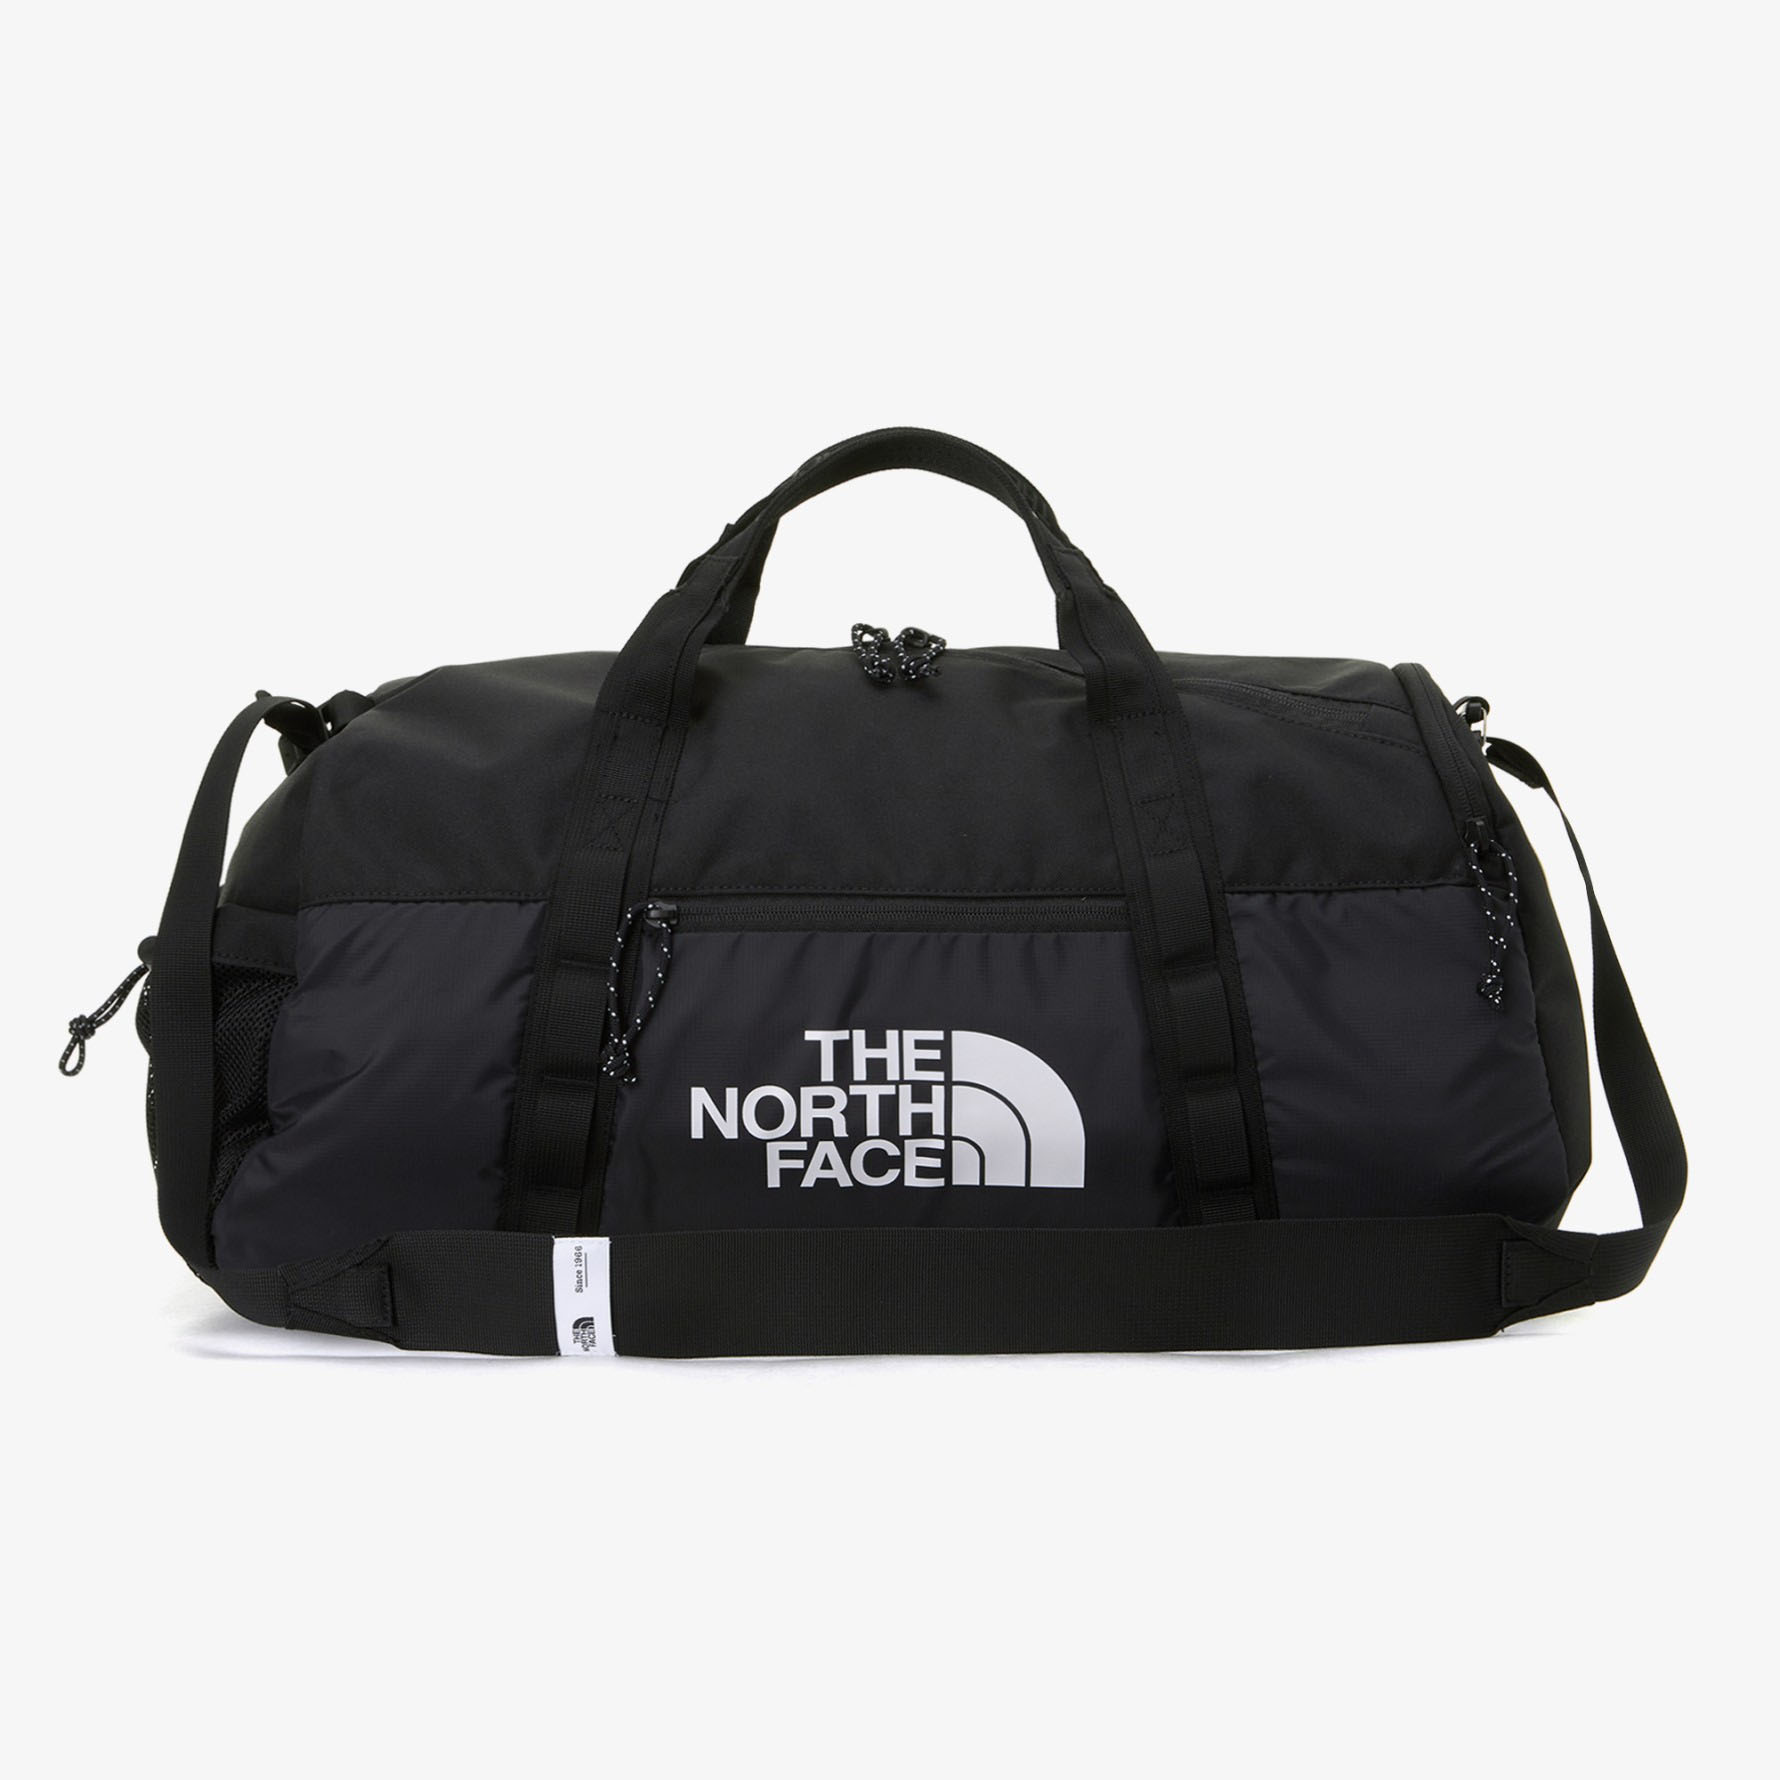 THE NORTH FACE ノースフェイス ボストンバッグ BOZER DUFFEL BAG 32L ドラムバッグ スポーツバッグ 旅行バッグ  BLUE BLACK 2WAY バッグ かばん NN2FP32A/B